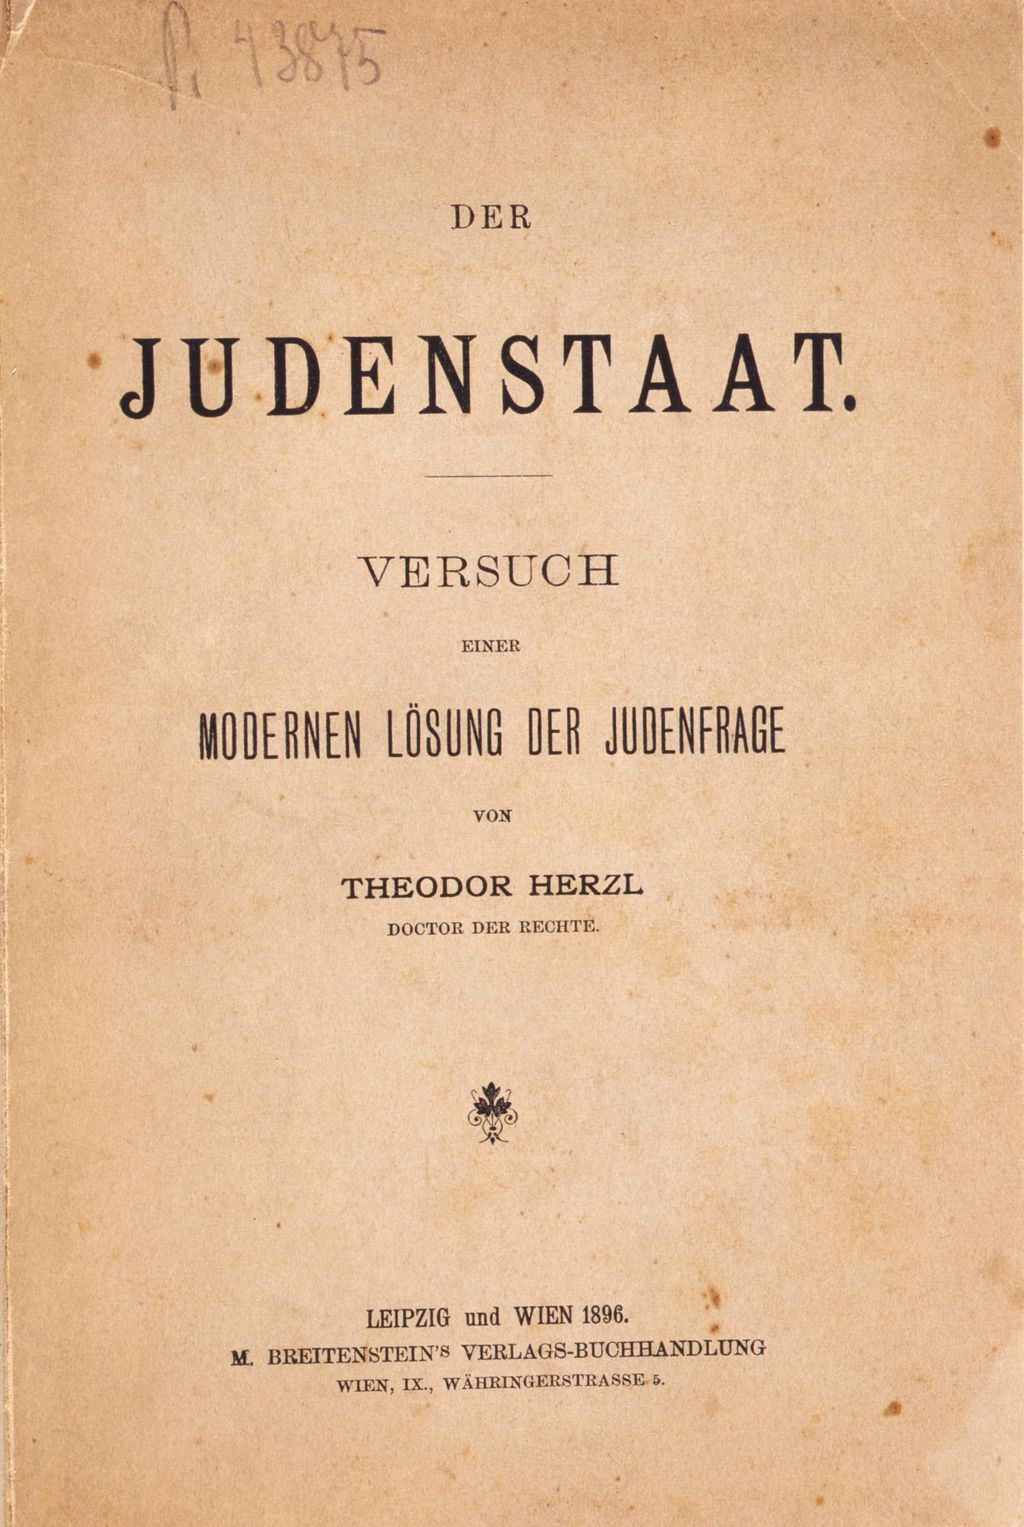 Buch: Herzl, Theodor "Der Judenstaat", 1896